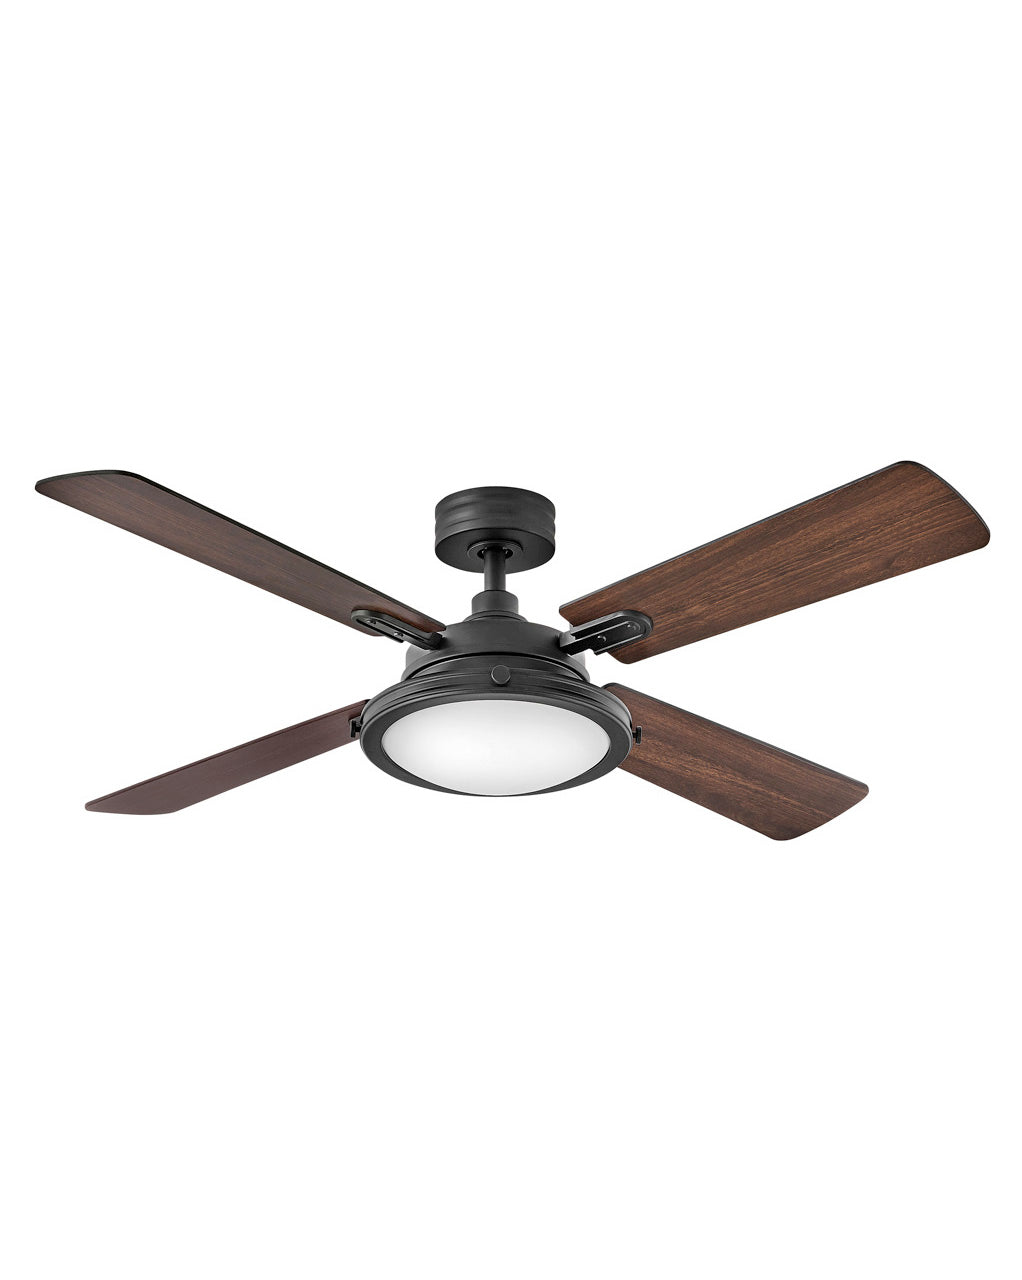 Hinkley Collier LED Fan